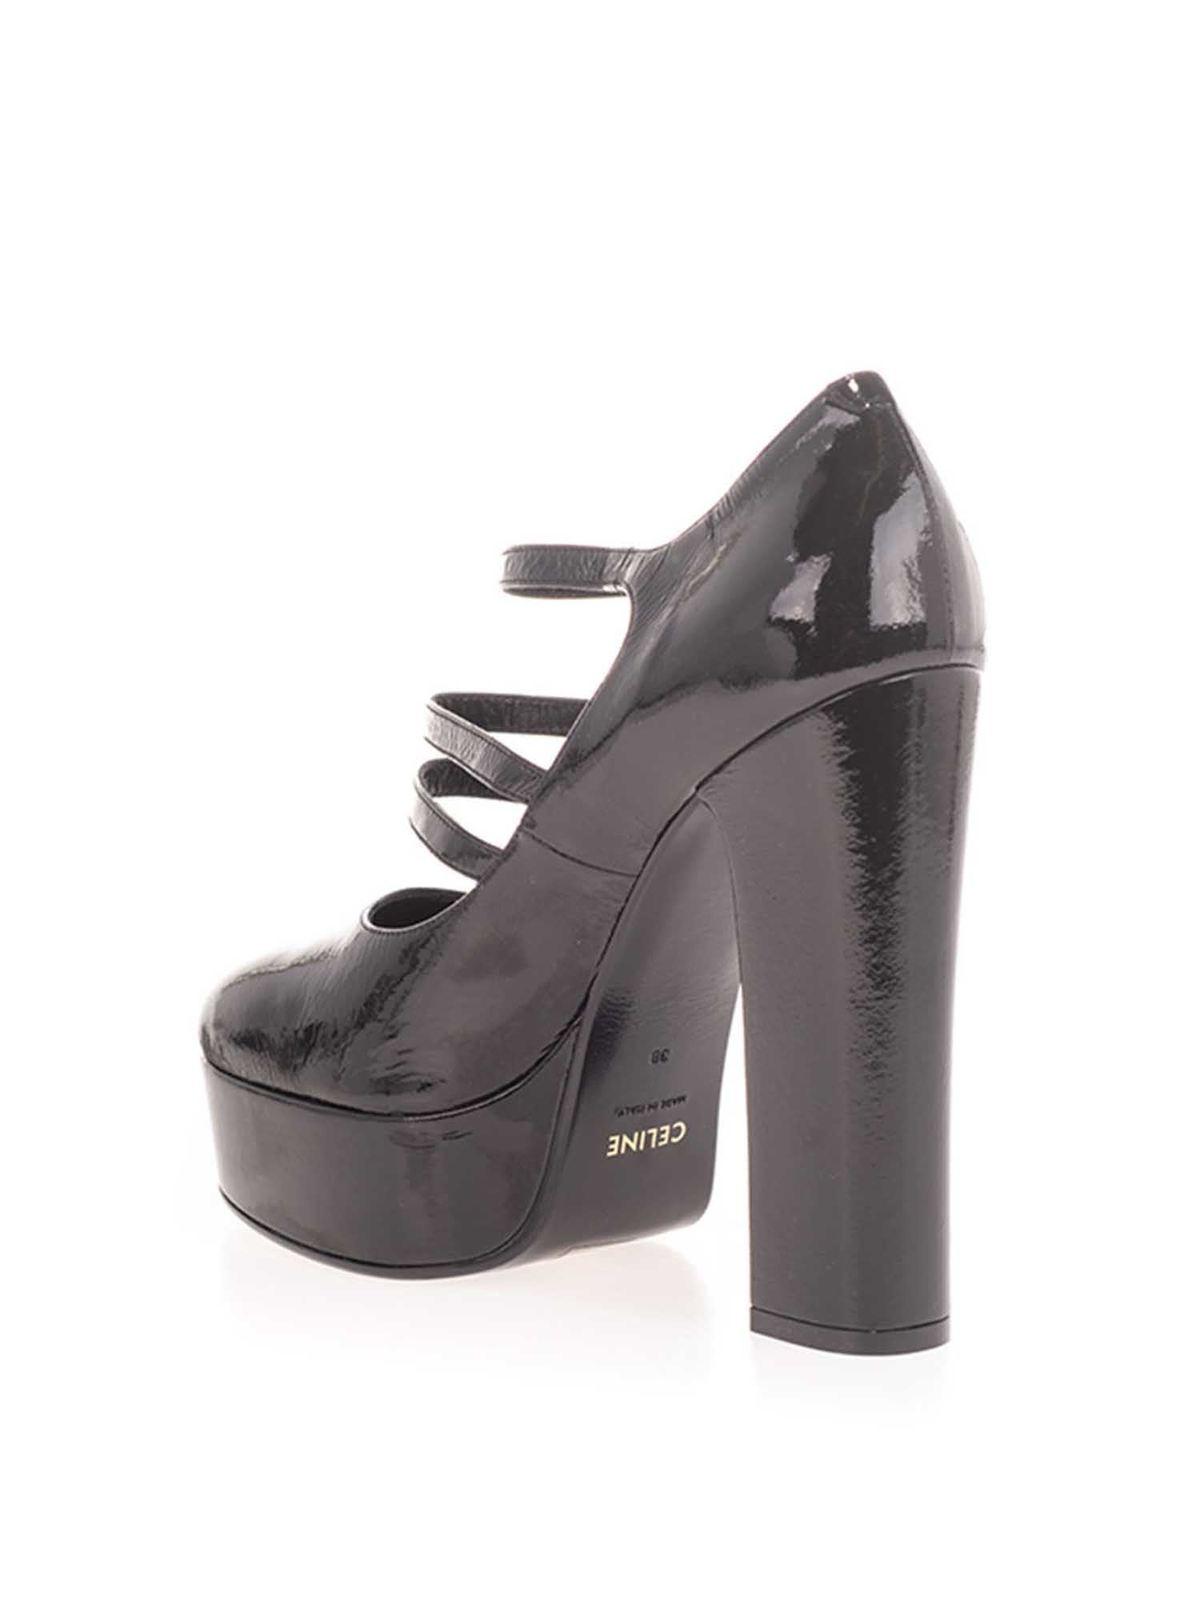 Court shoes Céline - Melody Mary Jane pumps - 341793513C38NO 